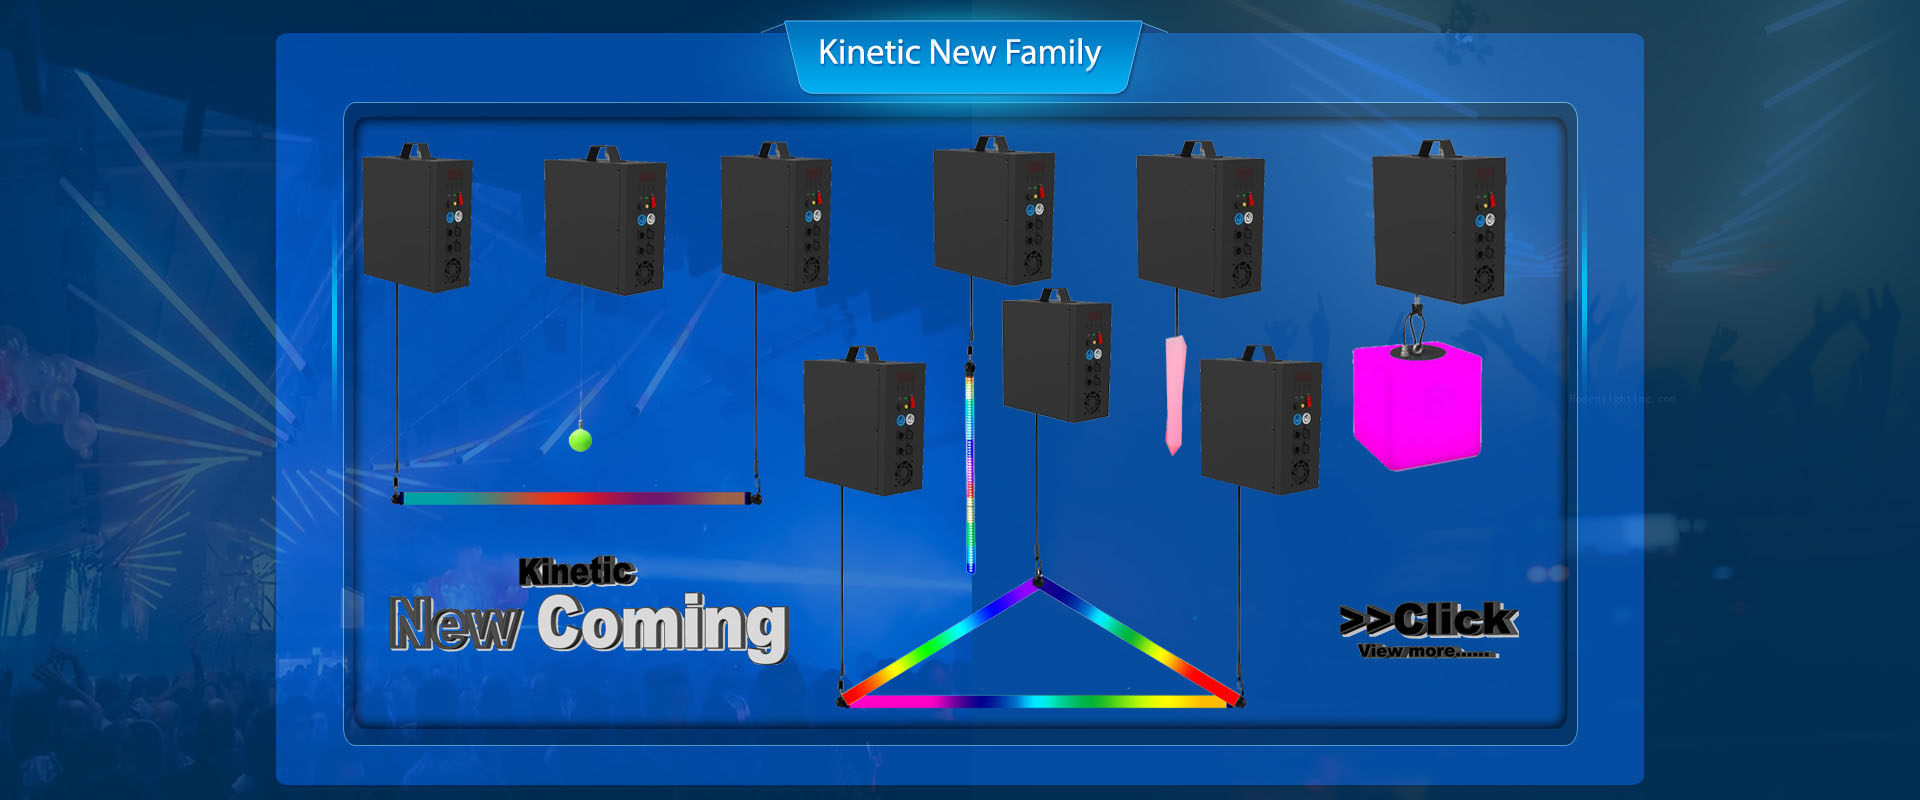 Infinity Rotation Led dancing DMX RGB kinetic LED light pixel tube light HS-LMB60IR - Kinetic light - 3